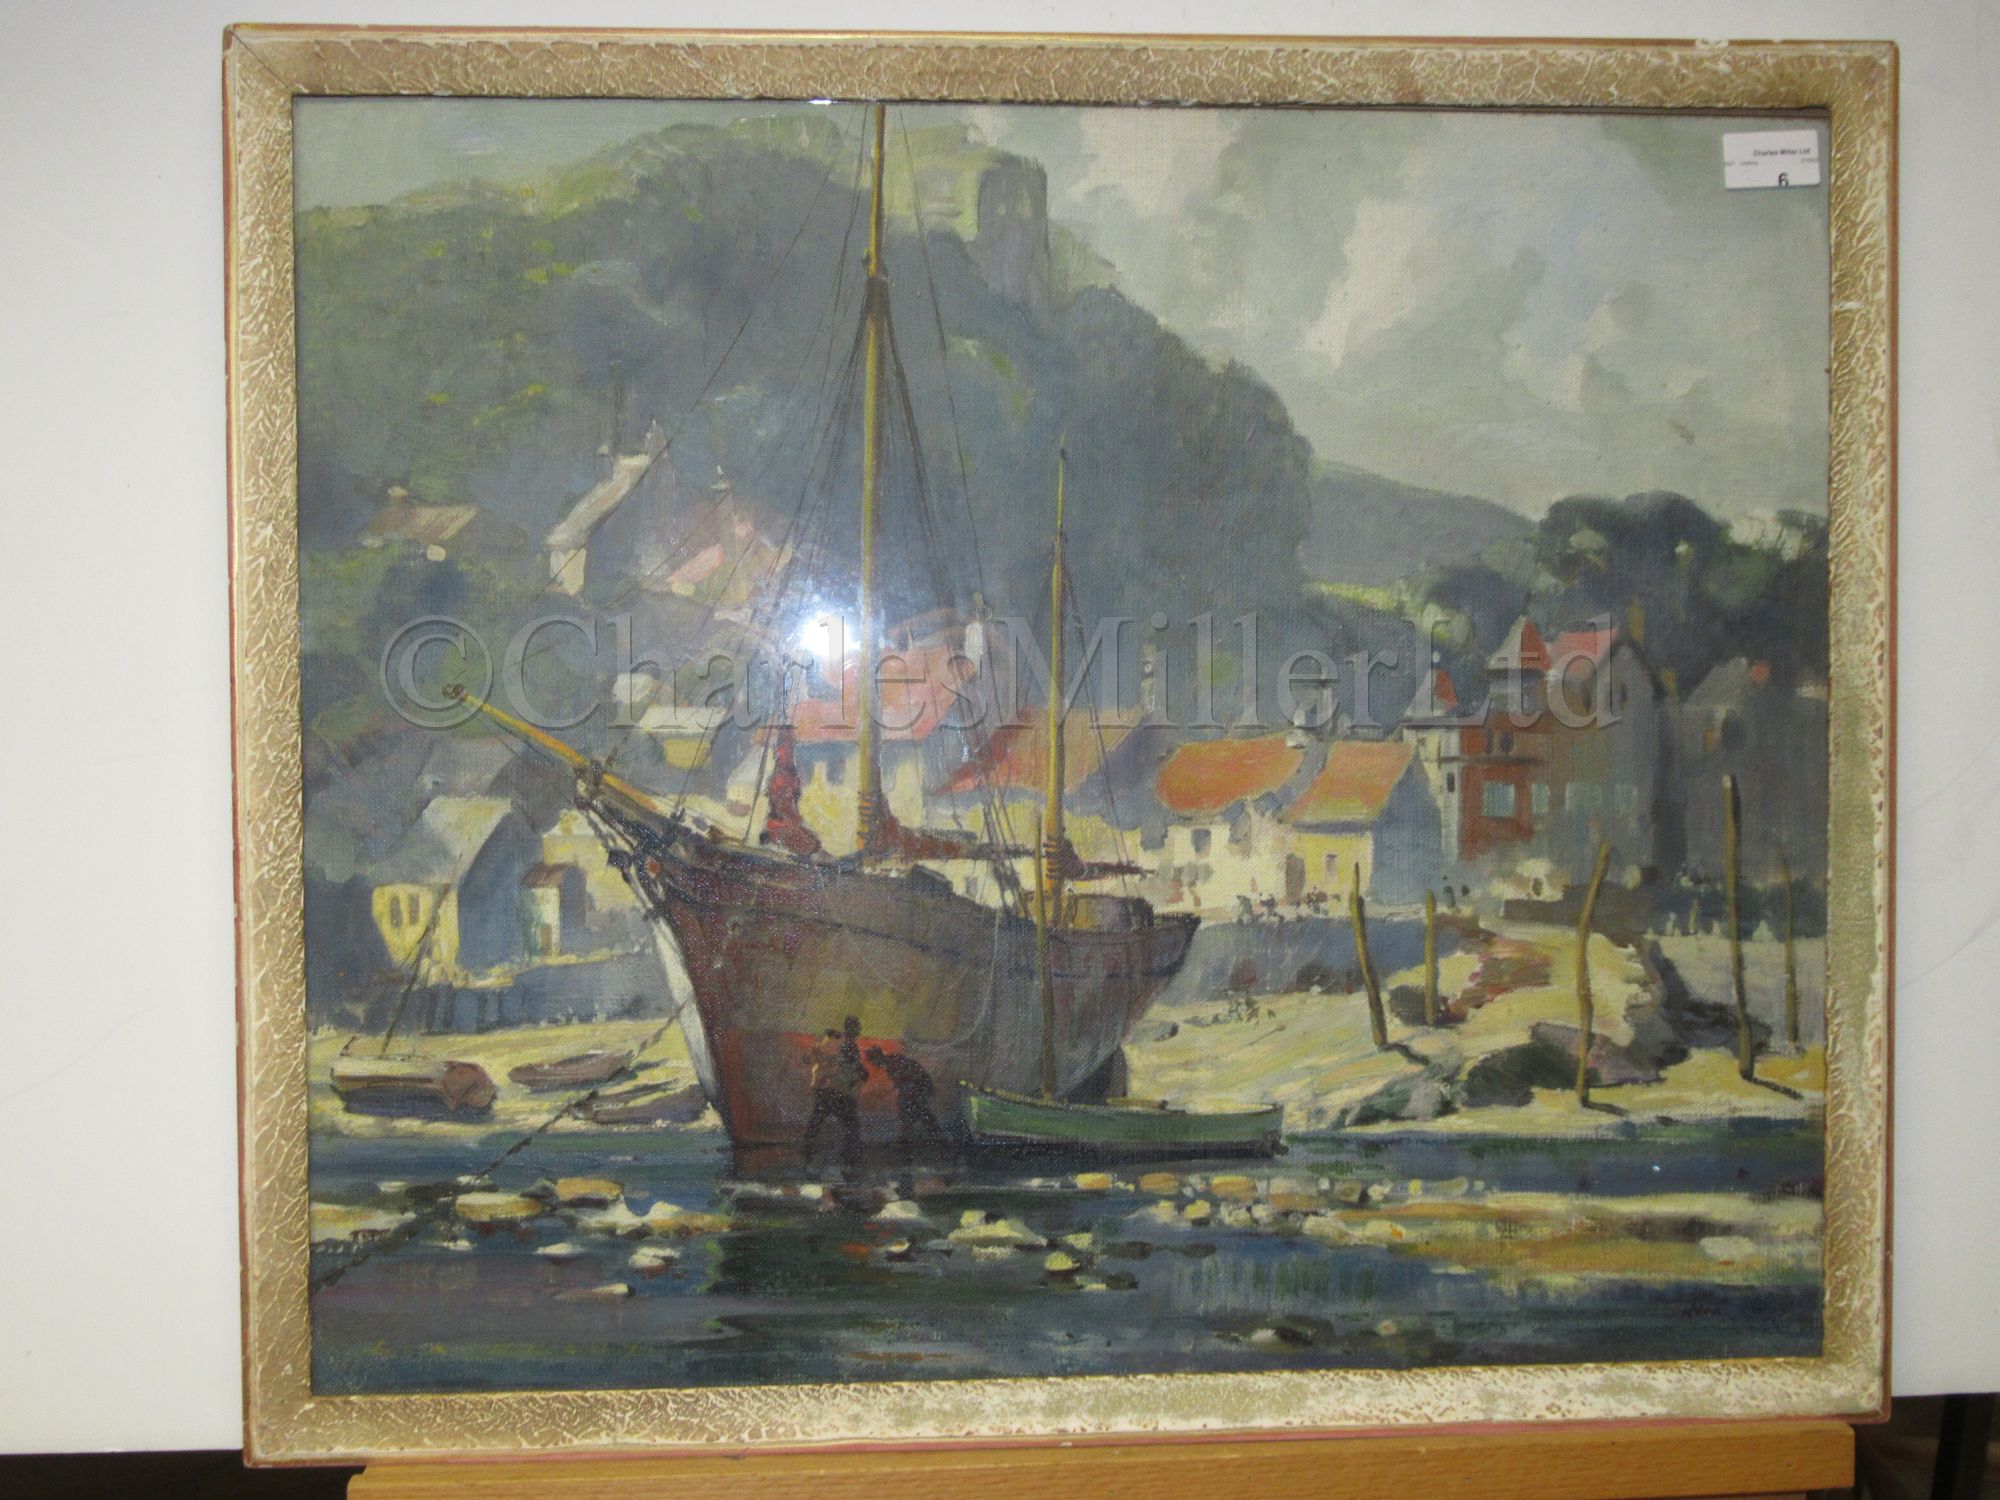 δ LESLEY ARTHUR WILCOX (BRITISH, 1904-1982) : Safe harbour; Anti-fowling on a Cornish beach - Image 3 of 9